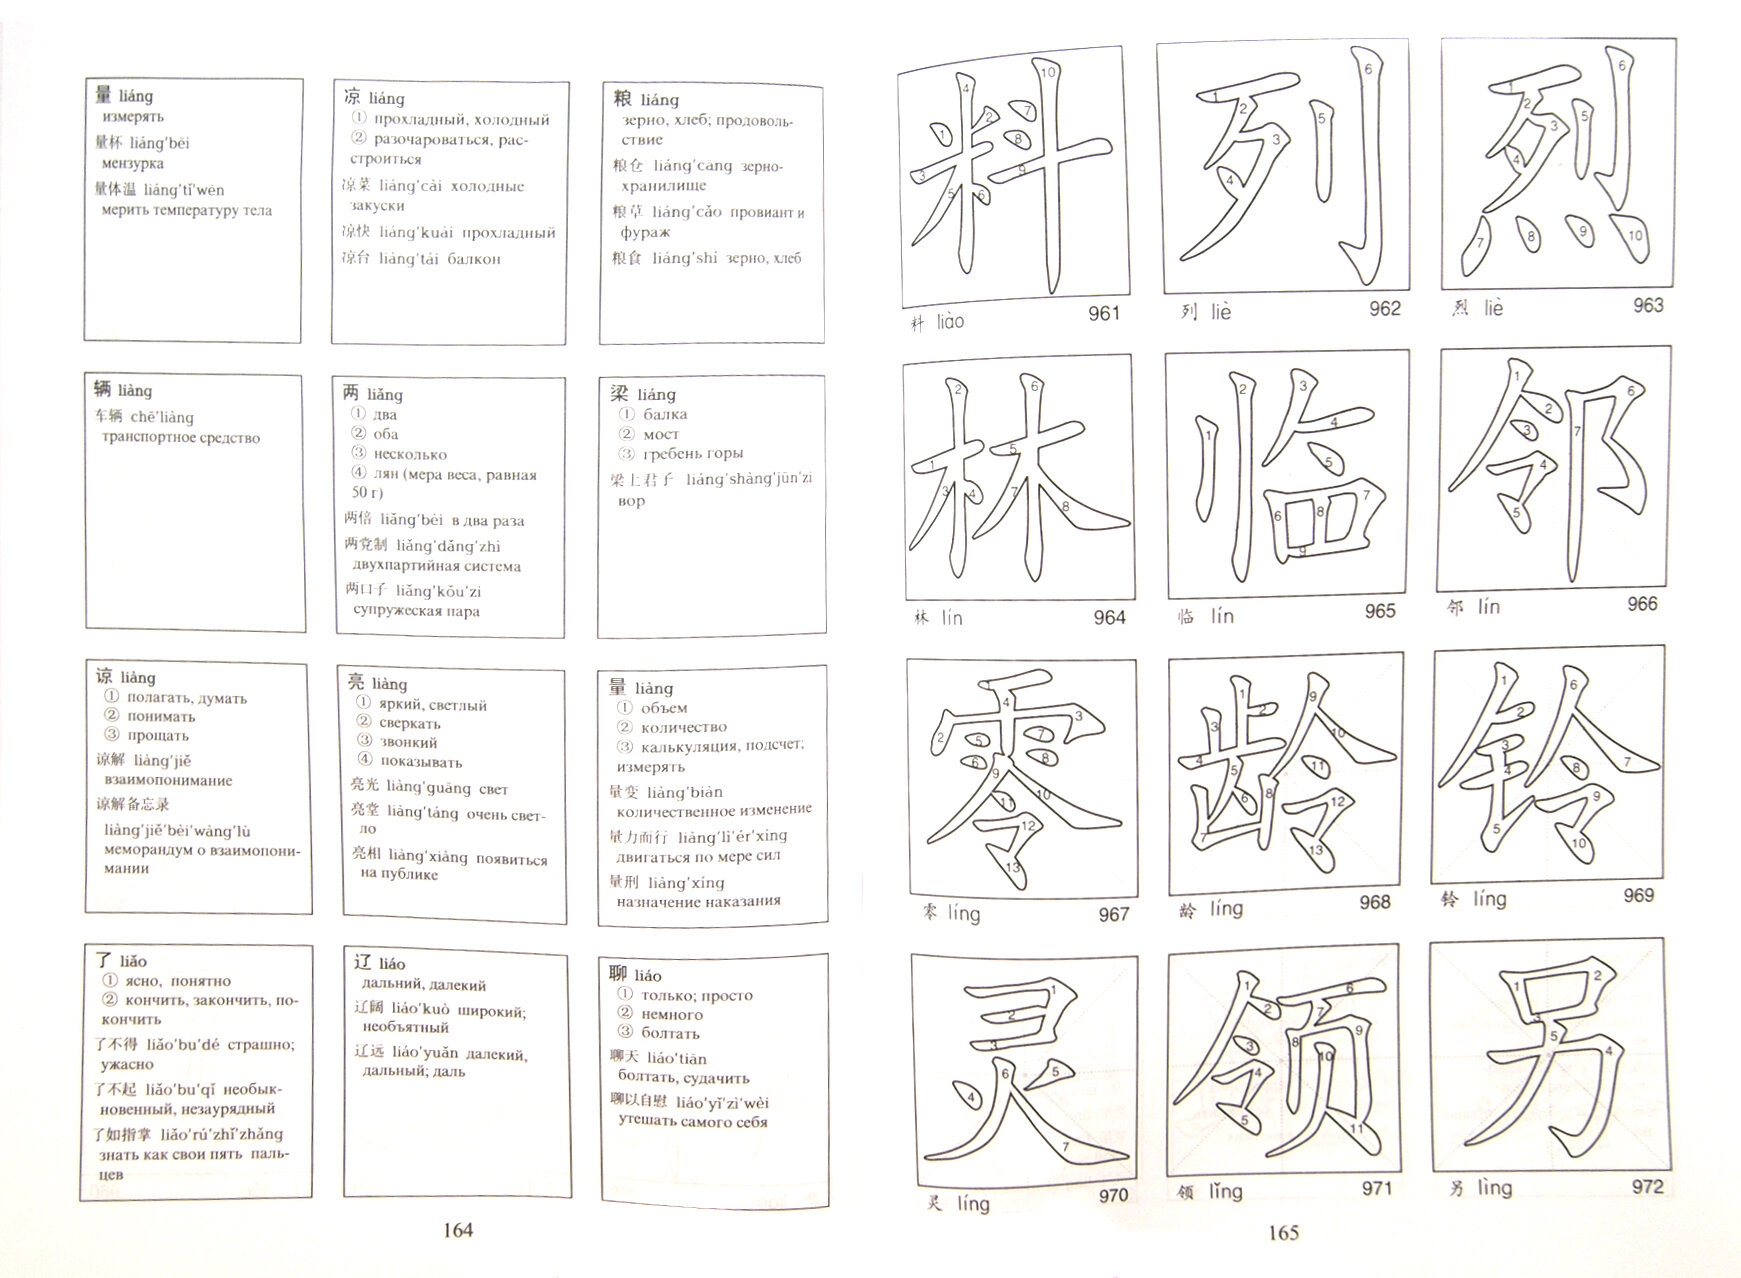 Китайские иероглифы в карточках - фото №7